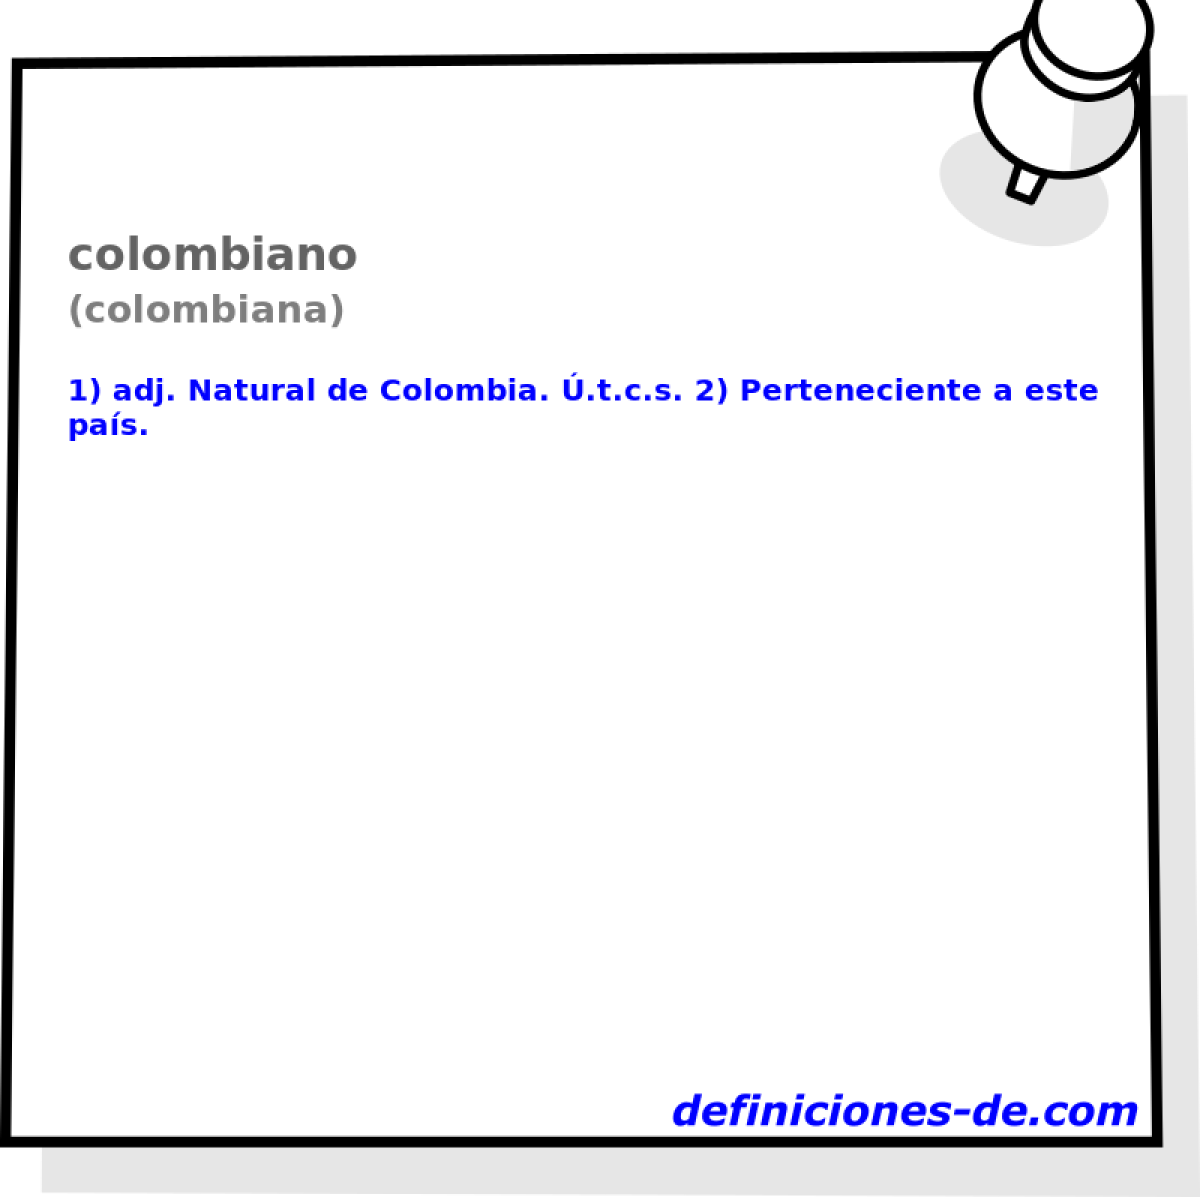 colombiano (colombiana)